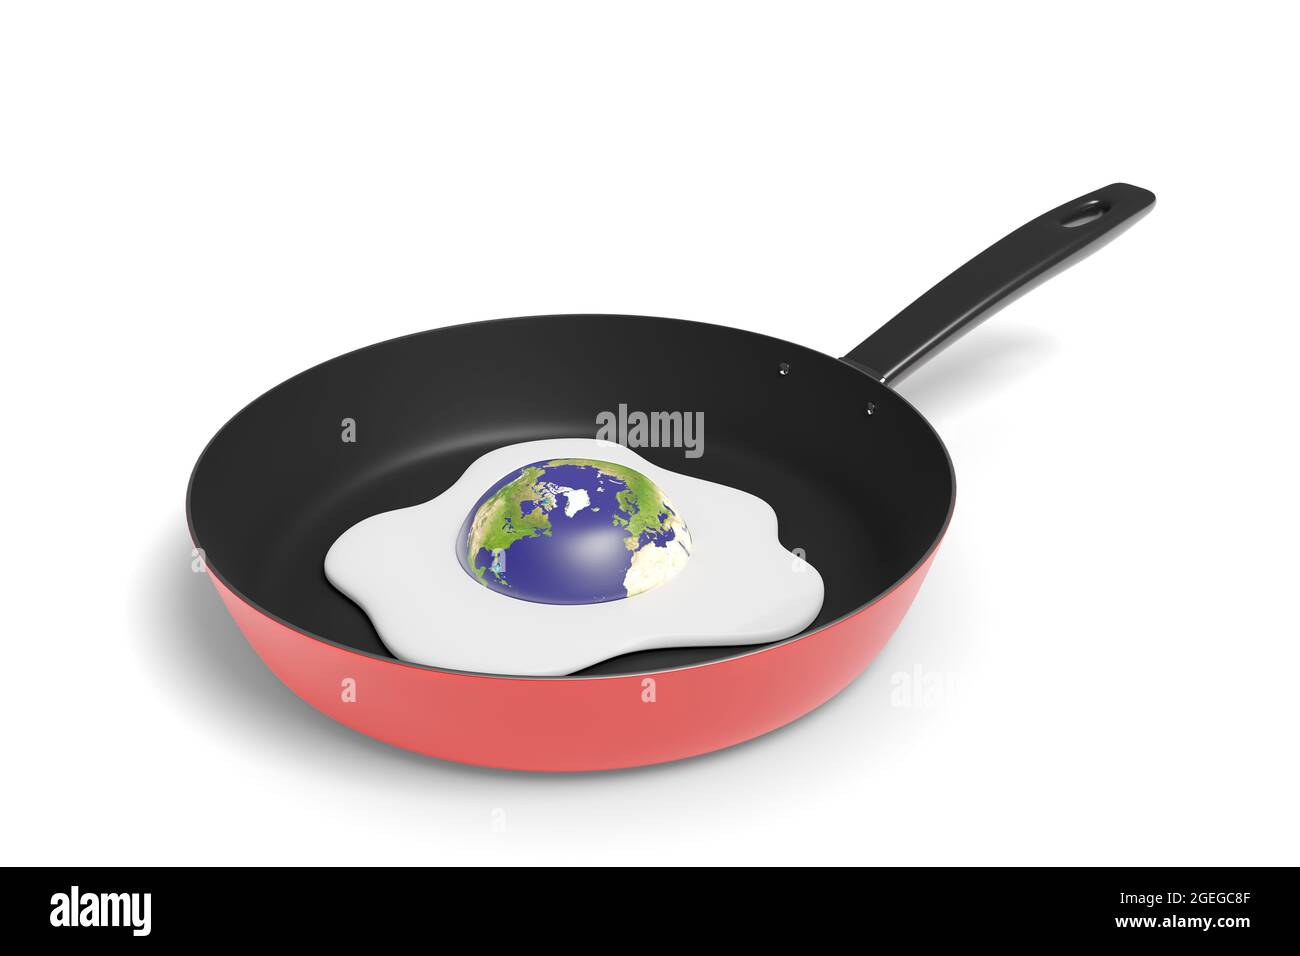 Planeta Tierra cocinar como un huevo frito en una sartén aislada sobre fondo blanco. Concepto de calentamiento global. ilustración 3d. Foto de stock